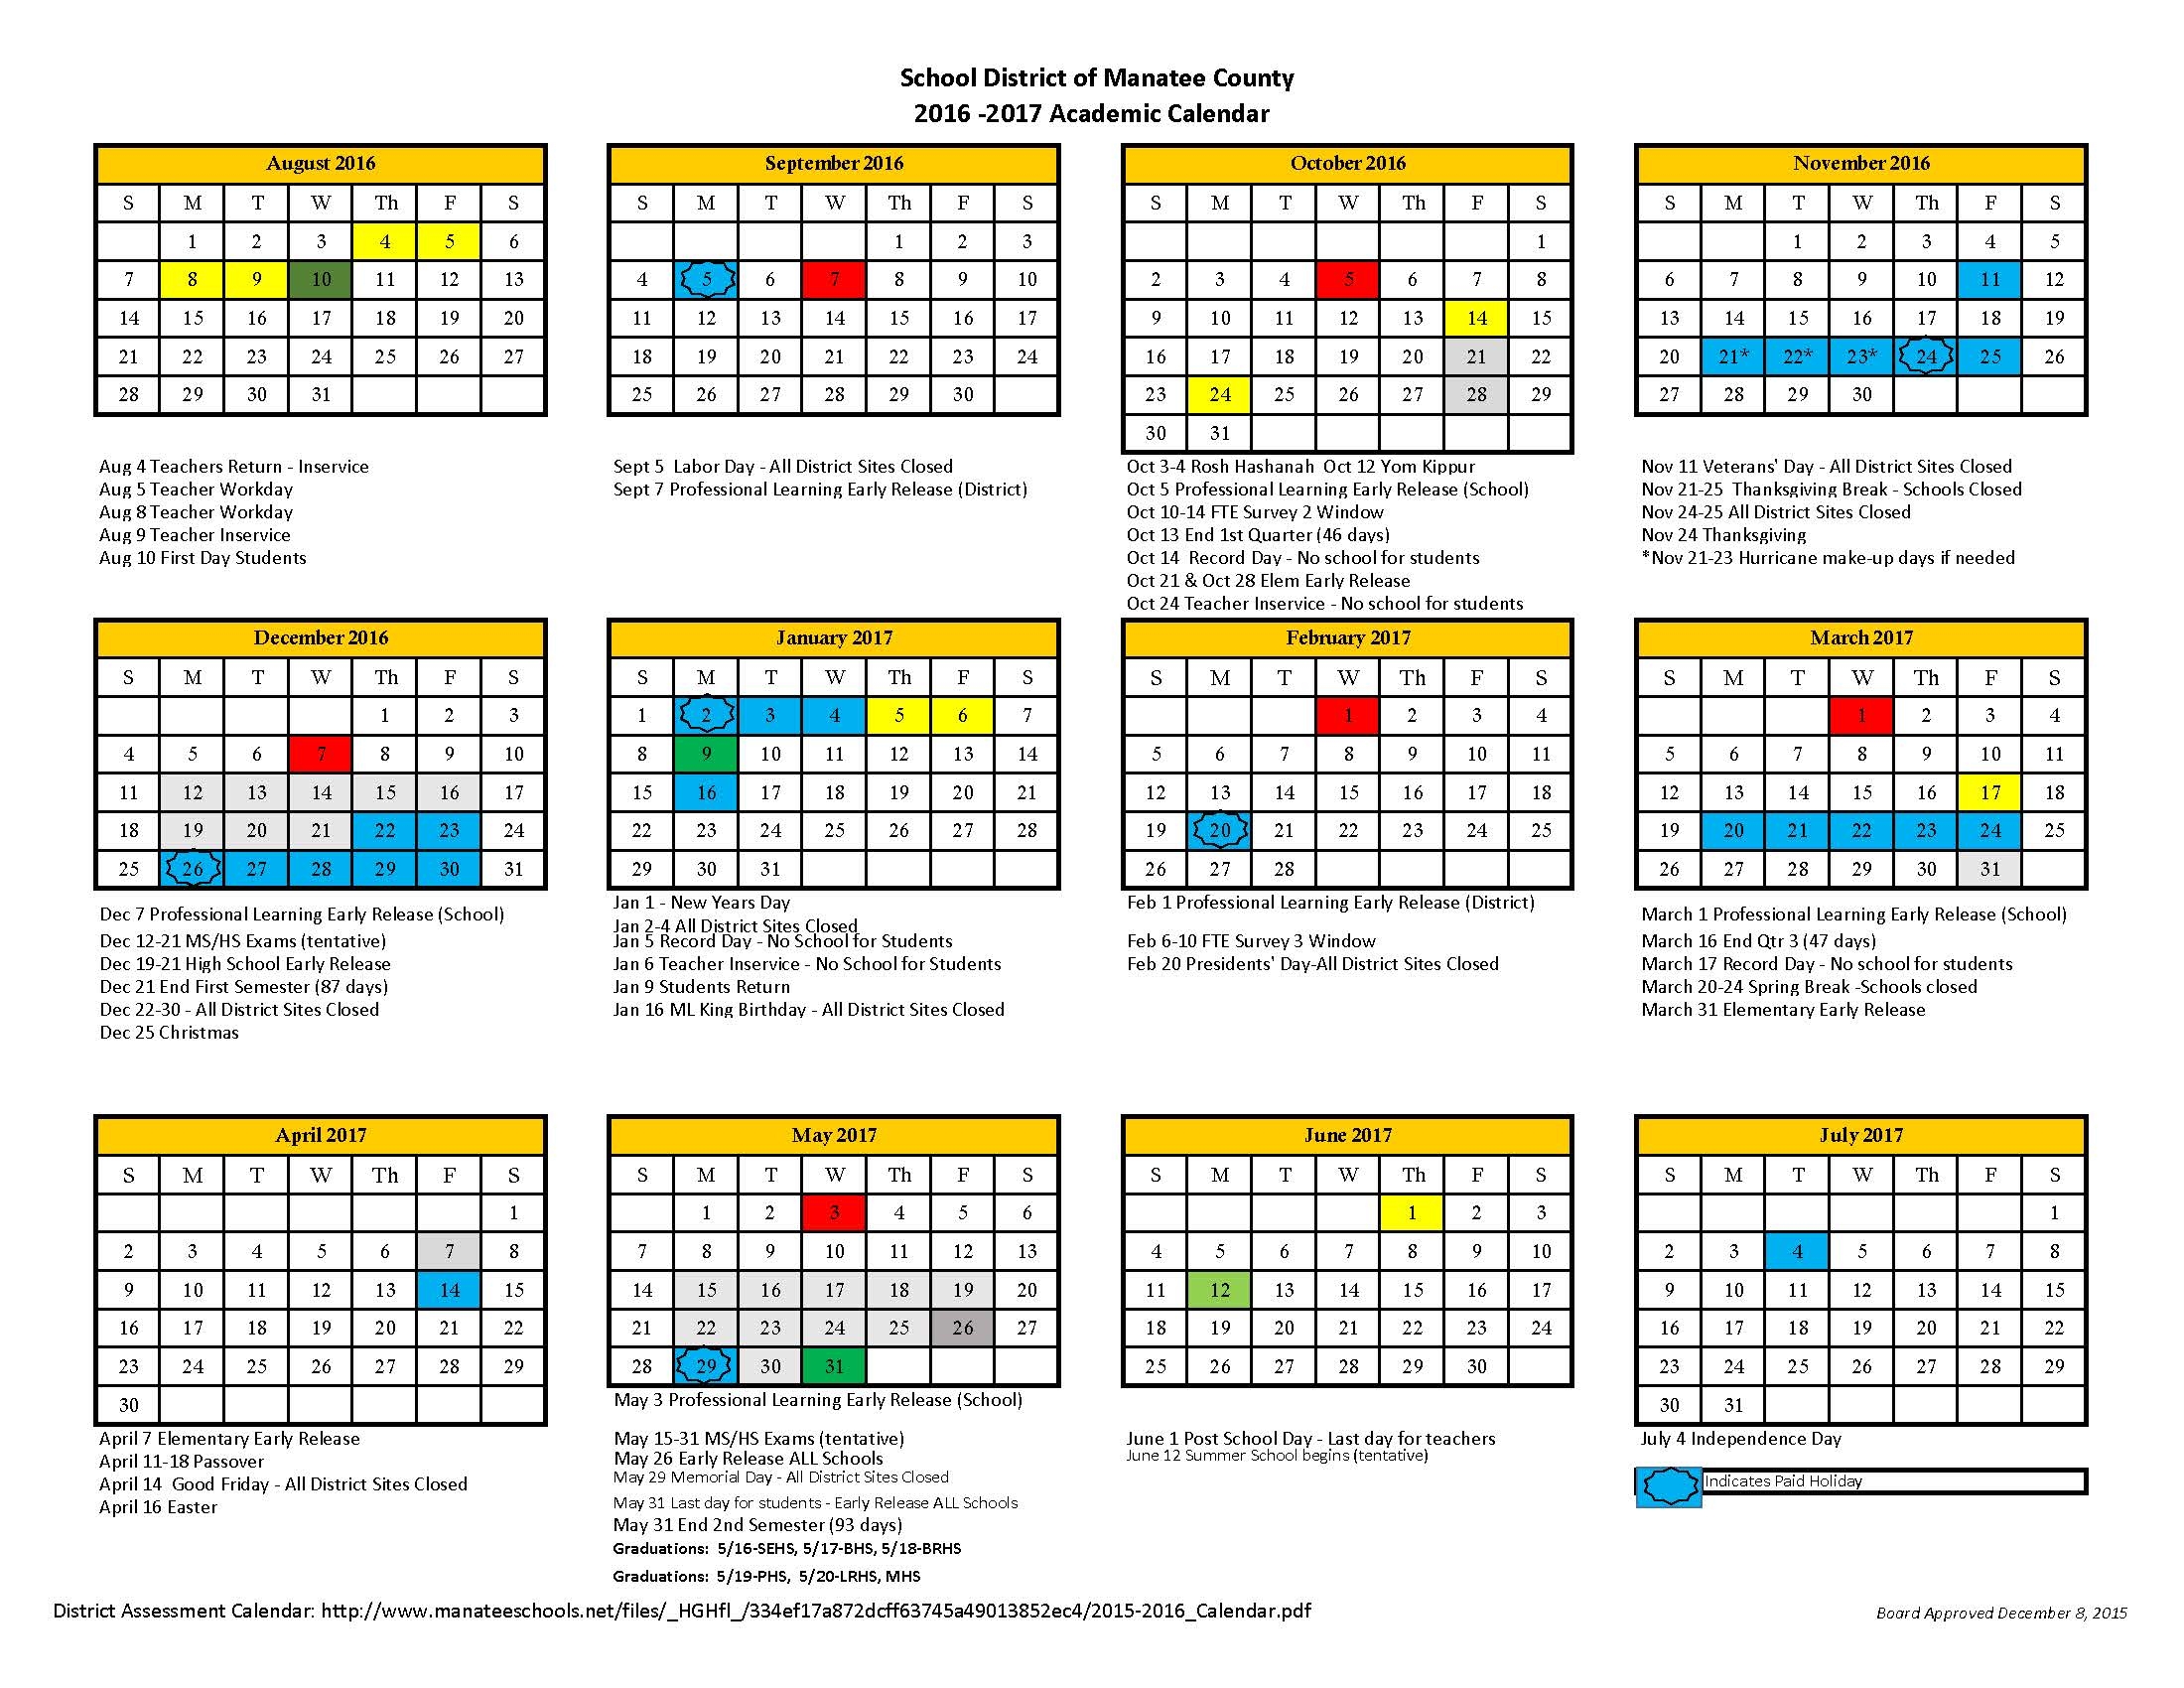 manatee-county-school-calendar-qualads